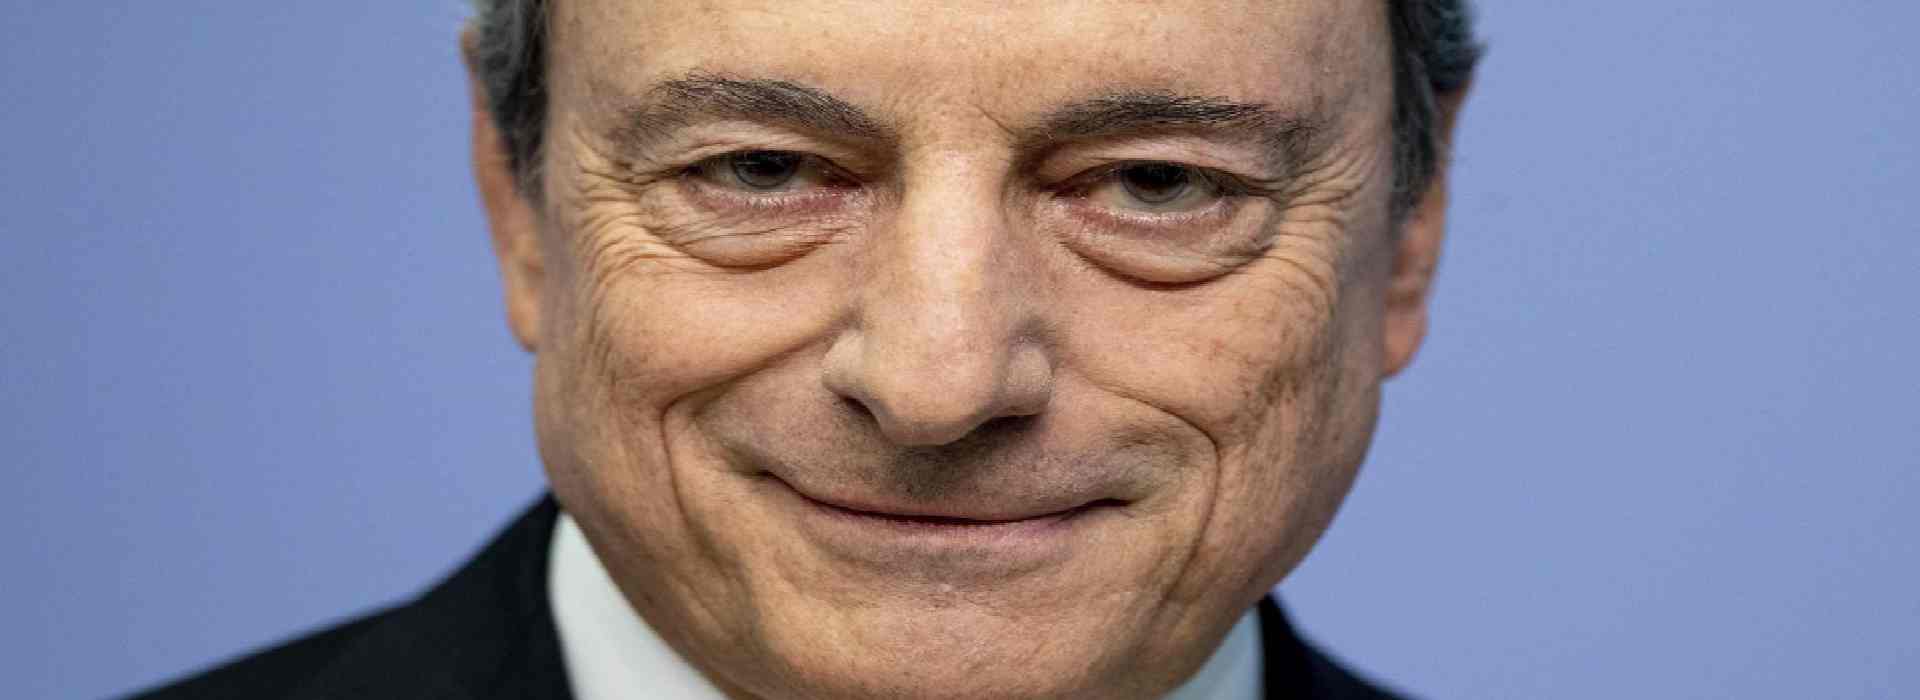 Draghi accetta l'incarico. Apertura anche dai 5 stelle